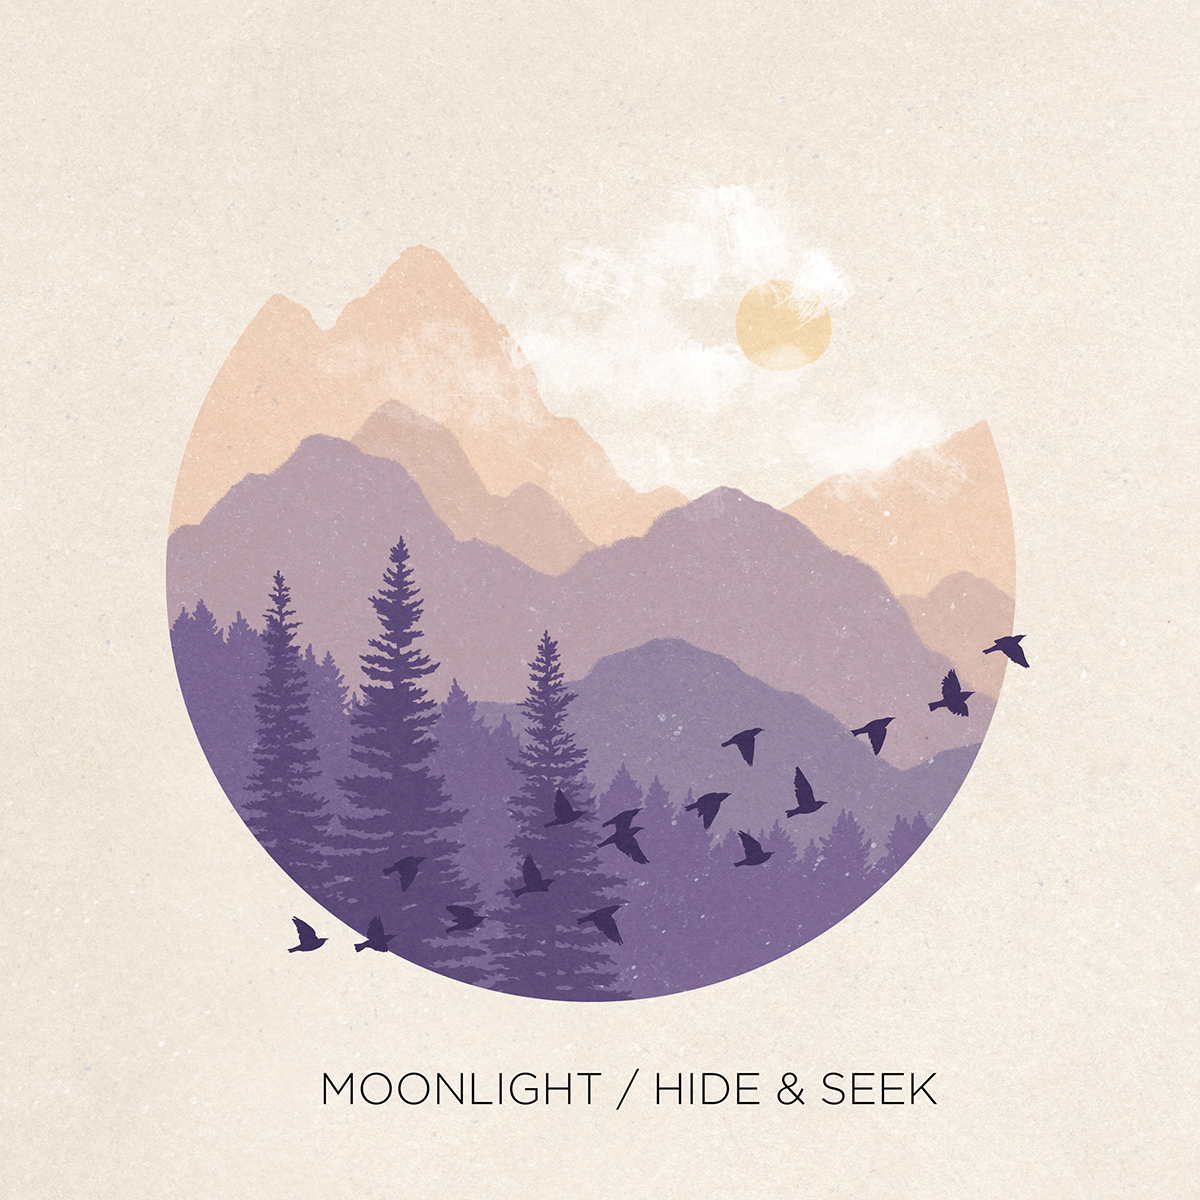 Faith and Moonlight by Mark Gelineau